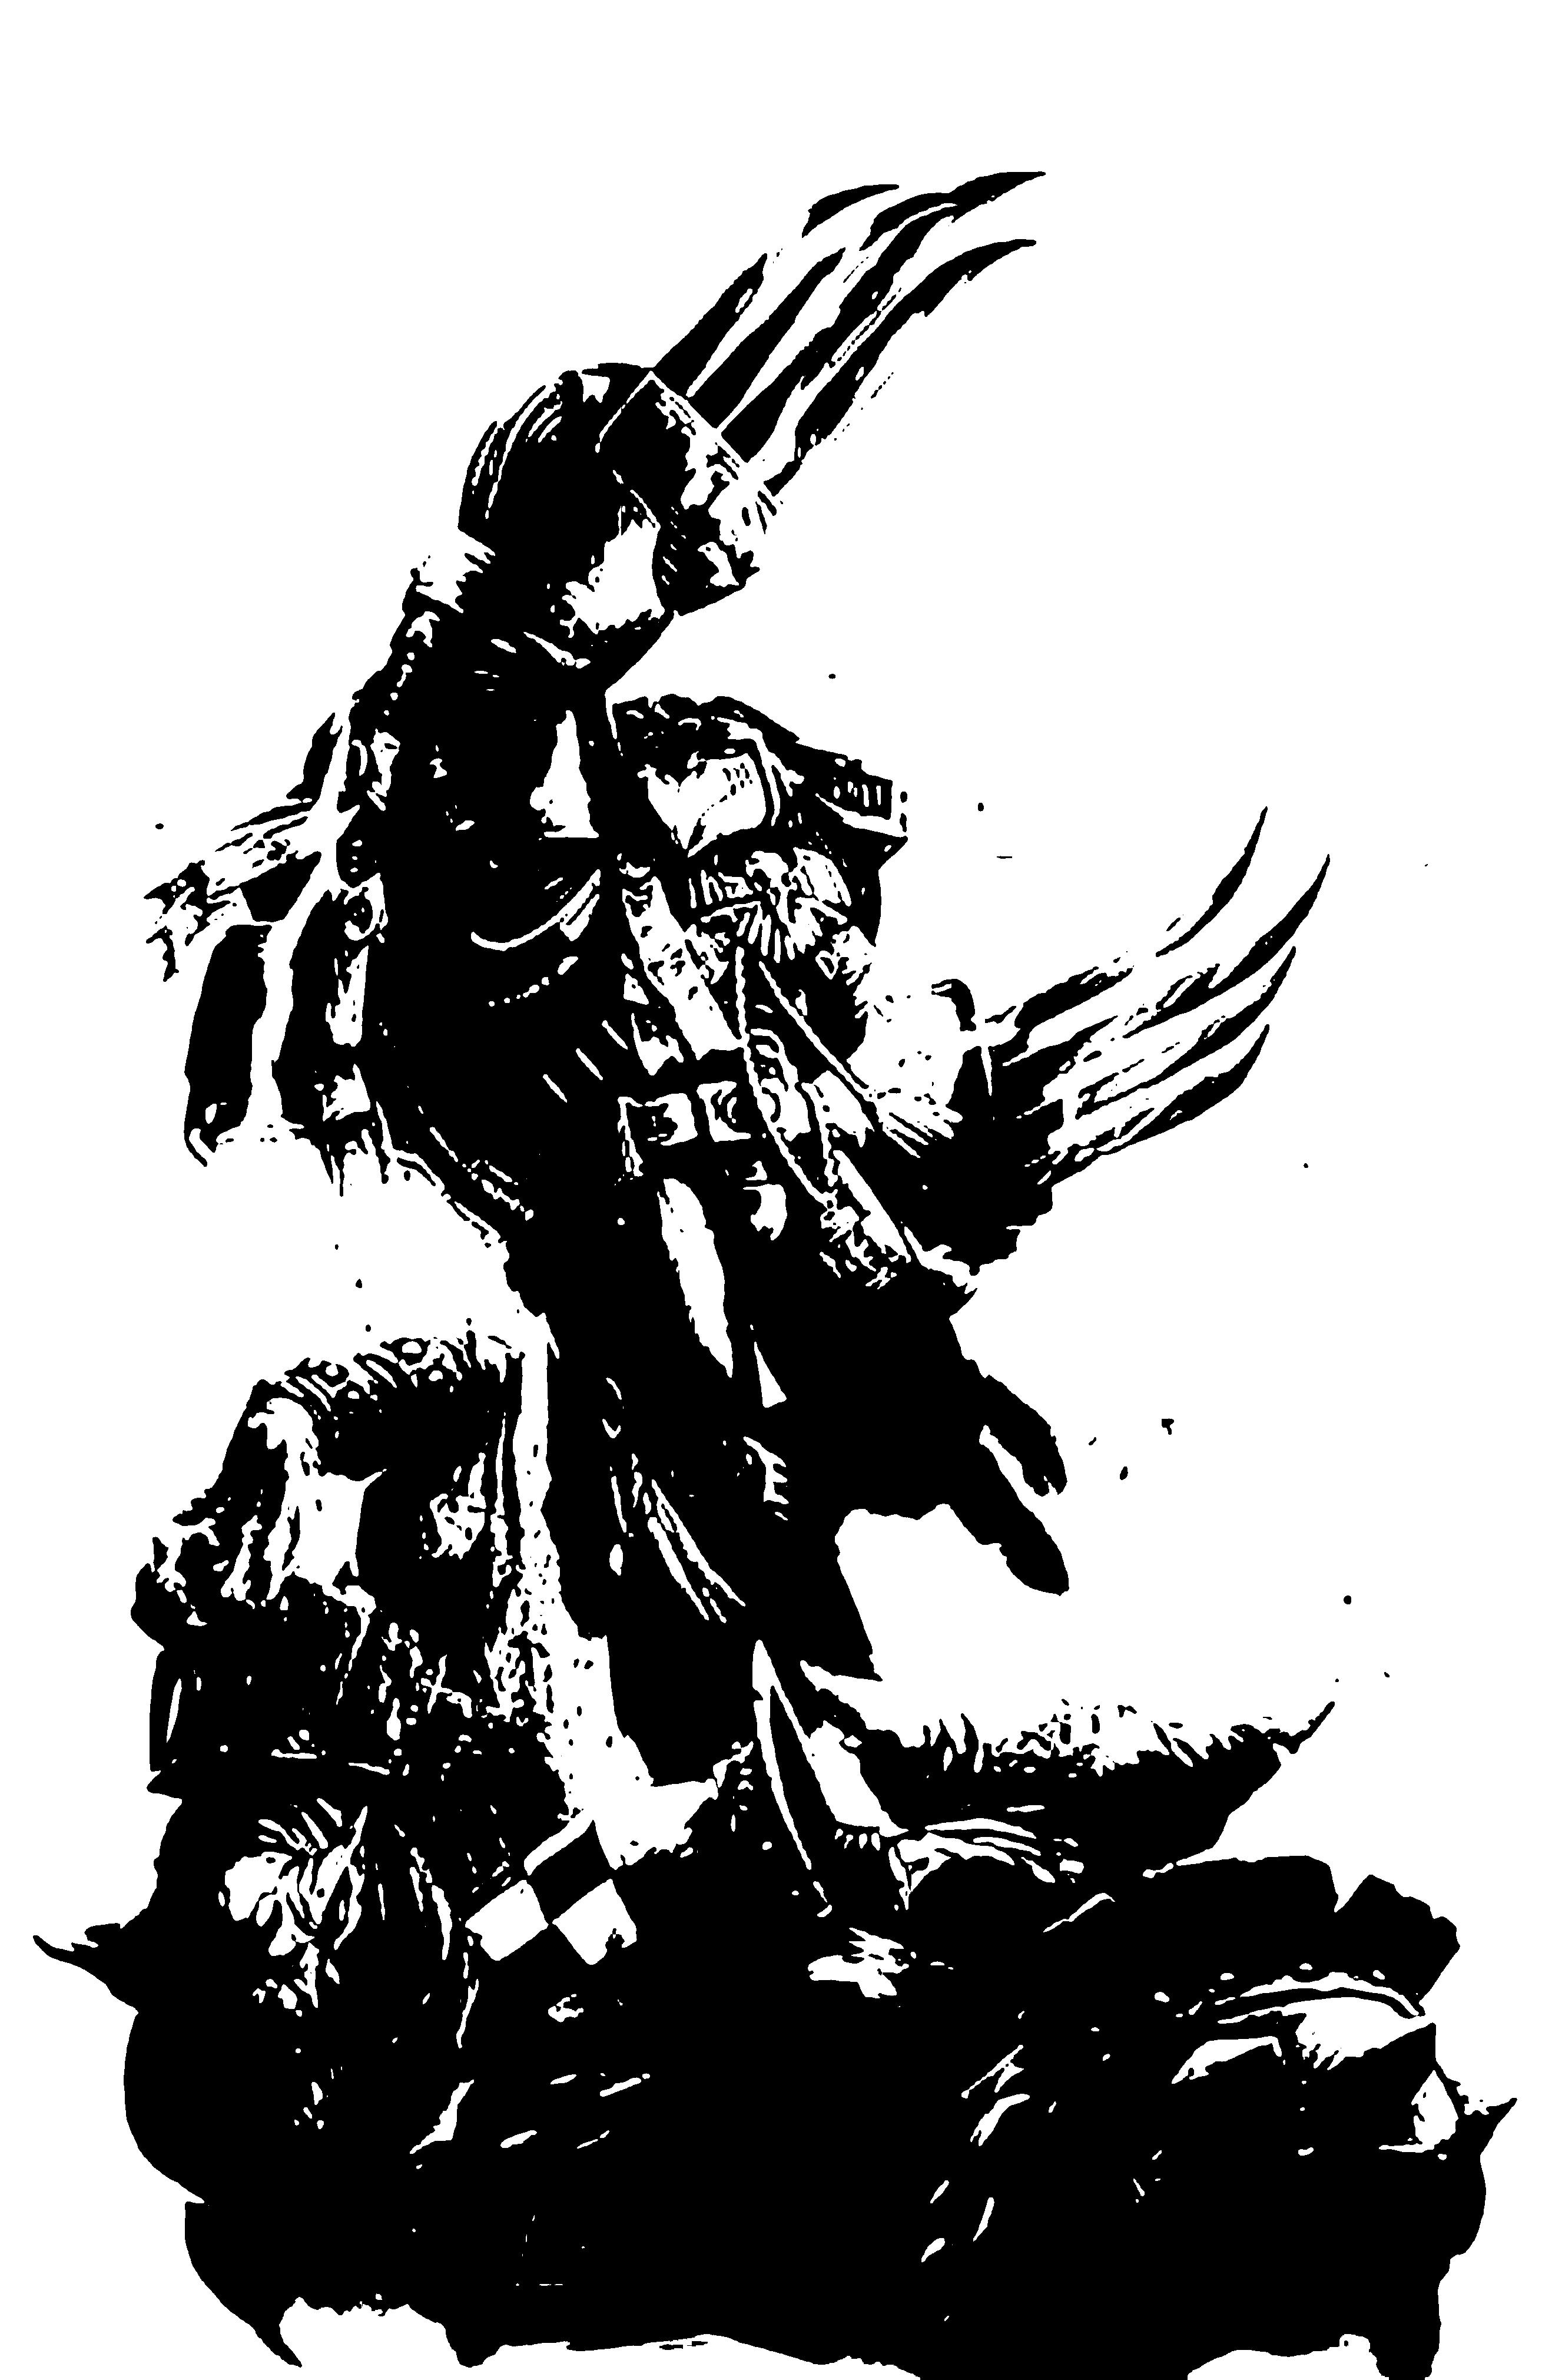 Raven (character), outer space, Warhammer 40k - desktop wallpaper